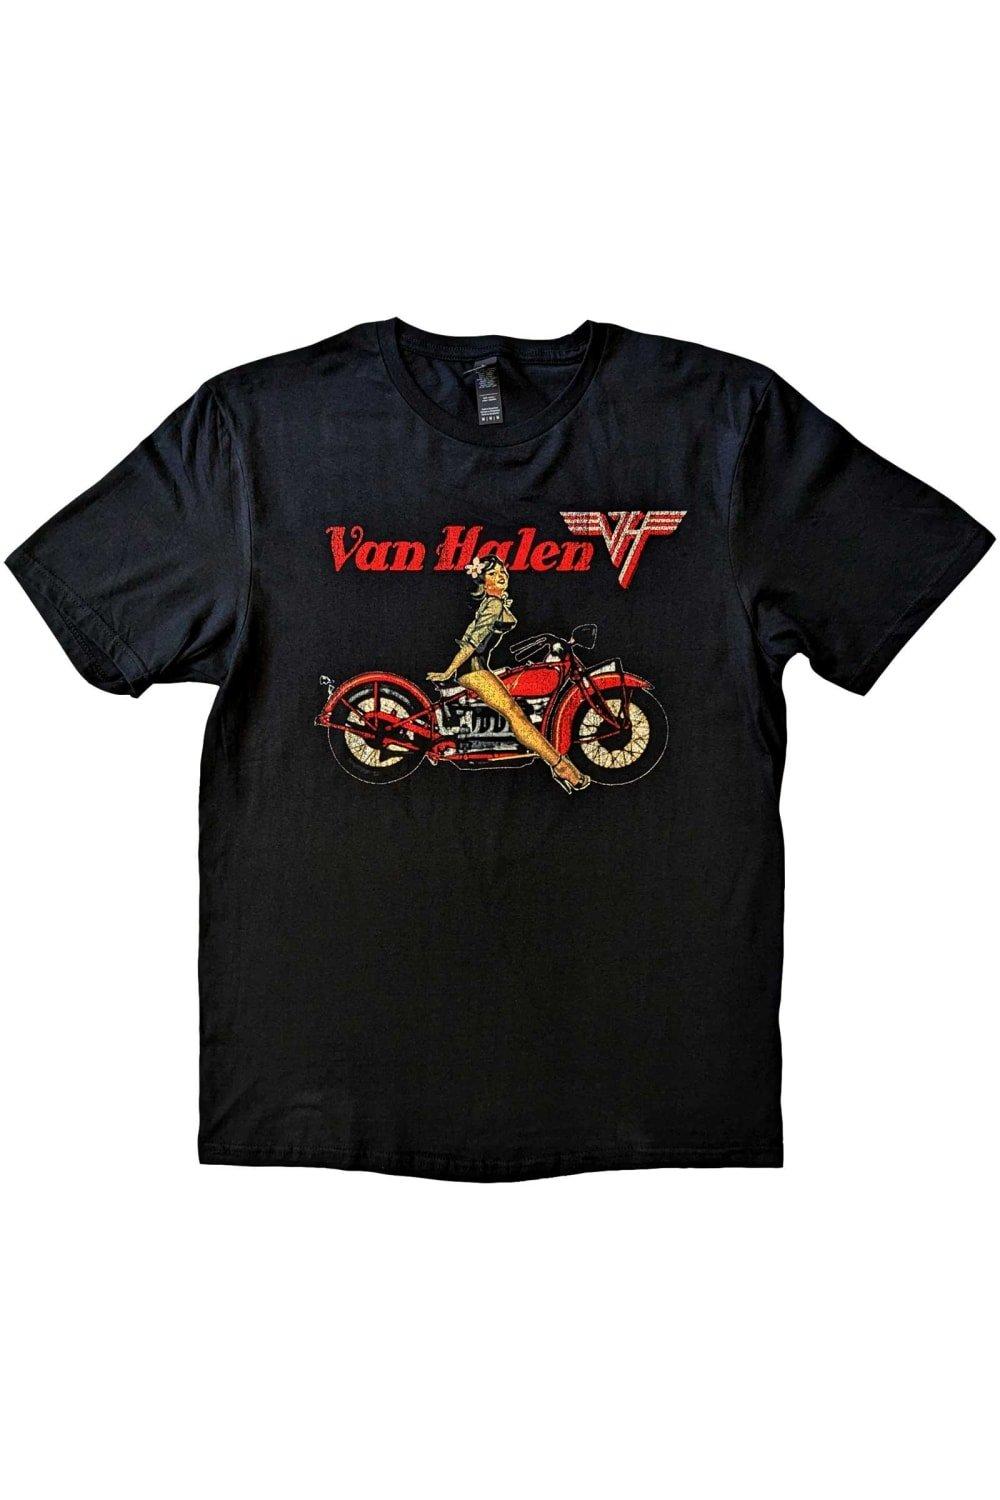 Хлопковая футболка Pinup Motorcycle Van Halen, черный компакт диски warner bros records van halen van halen cd